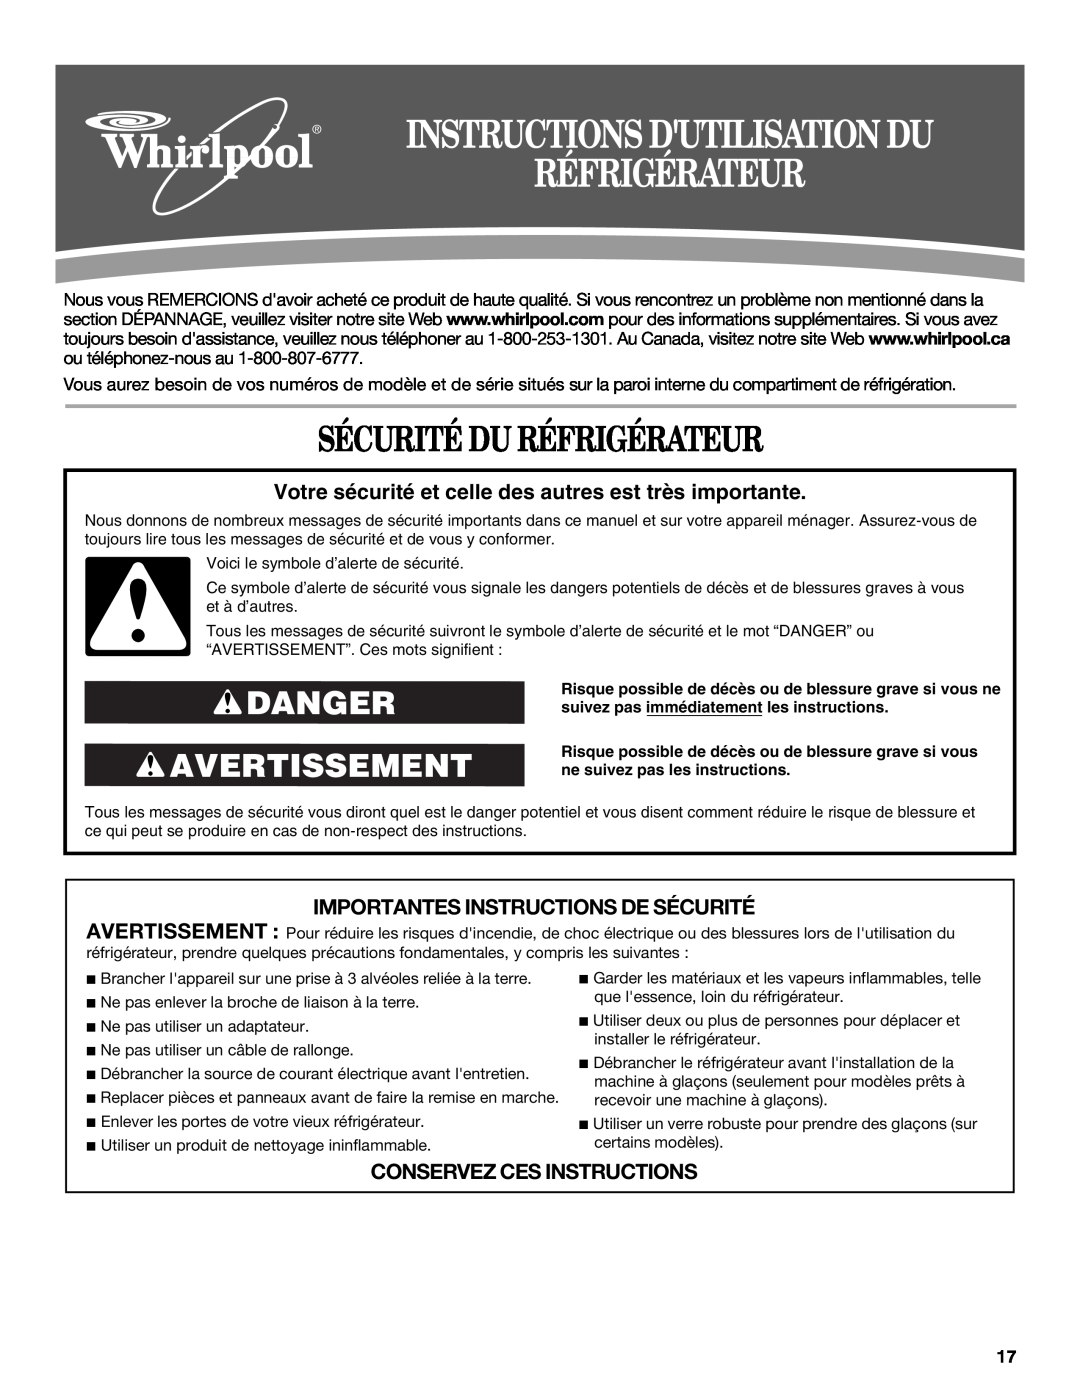 Whirlpool W10162458A, W10162459A Sécurité Du Réfrigérateur, Danger Avertissement, Importantes Instructions De Sécurité 